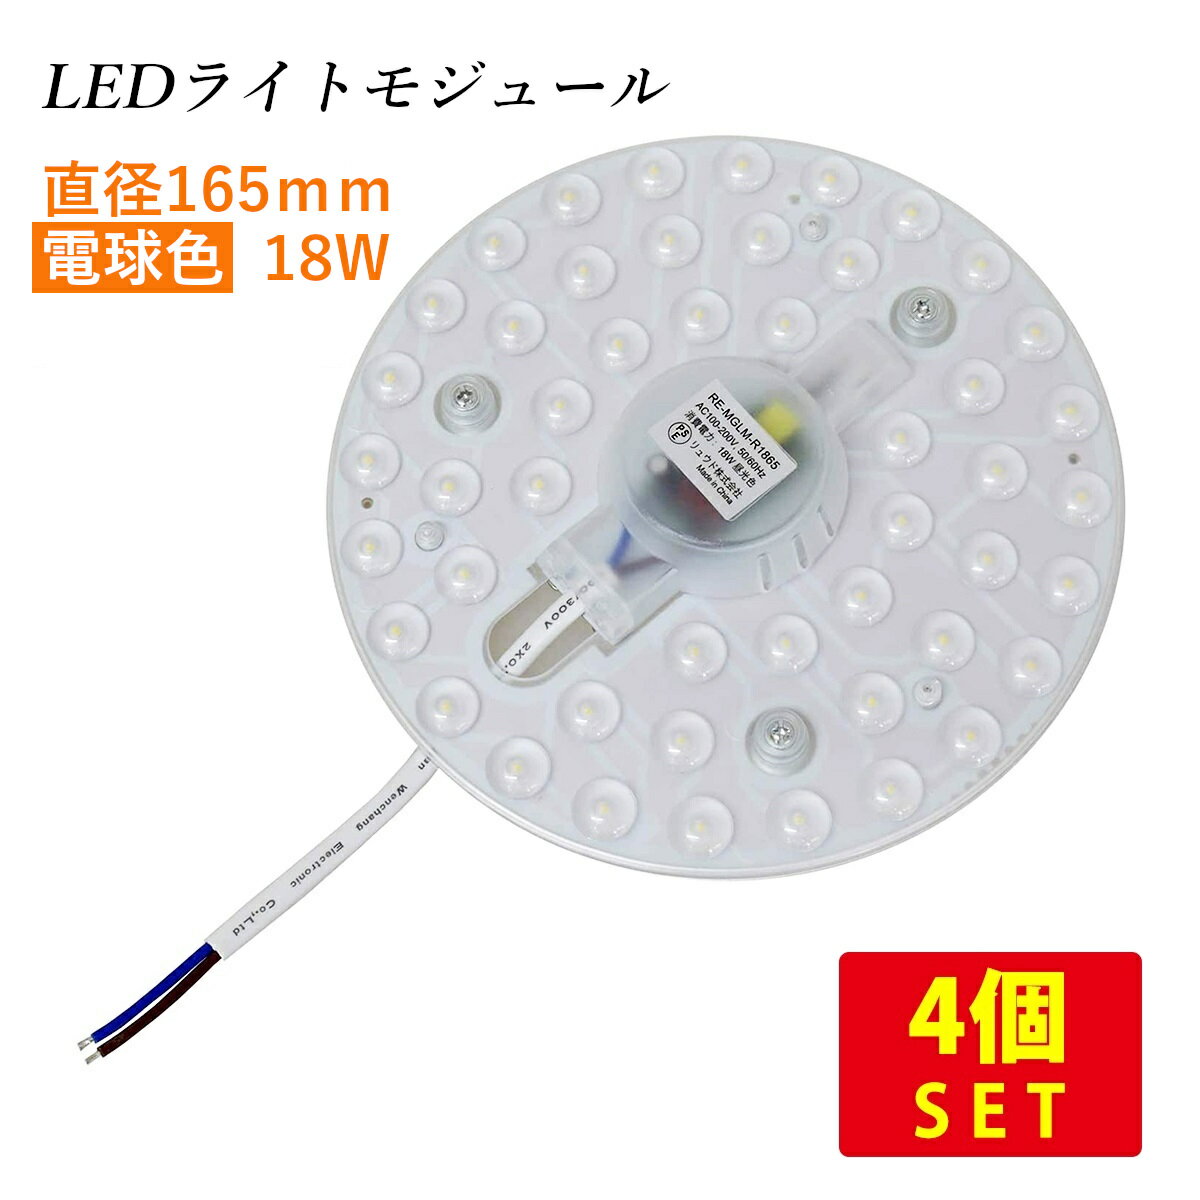 （4個セット）LEDライトモジュール マグネット式 直径165mm 電球色 2000lm 18W (30形FCL丸形蛍光灯相当の明るさ) 送料無料 (沖縄 離島を除く) 節電 電気代節約